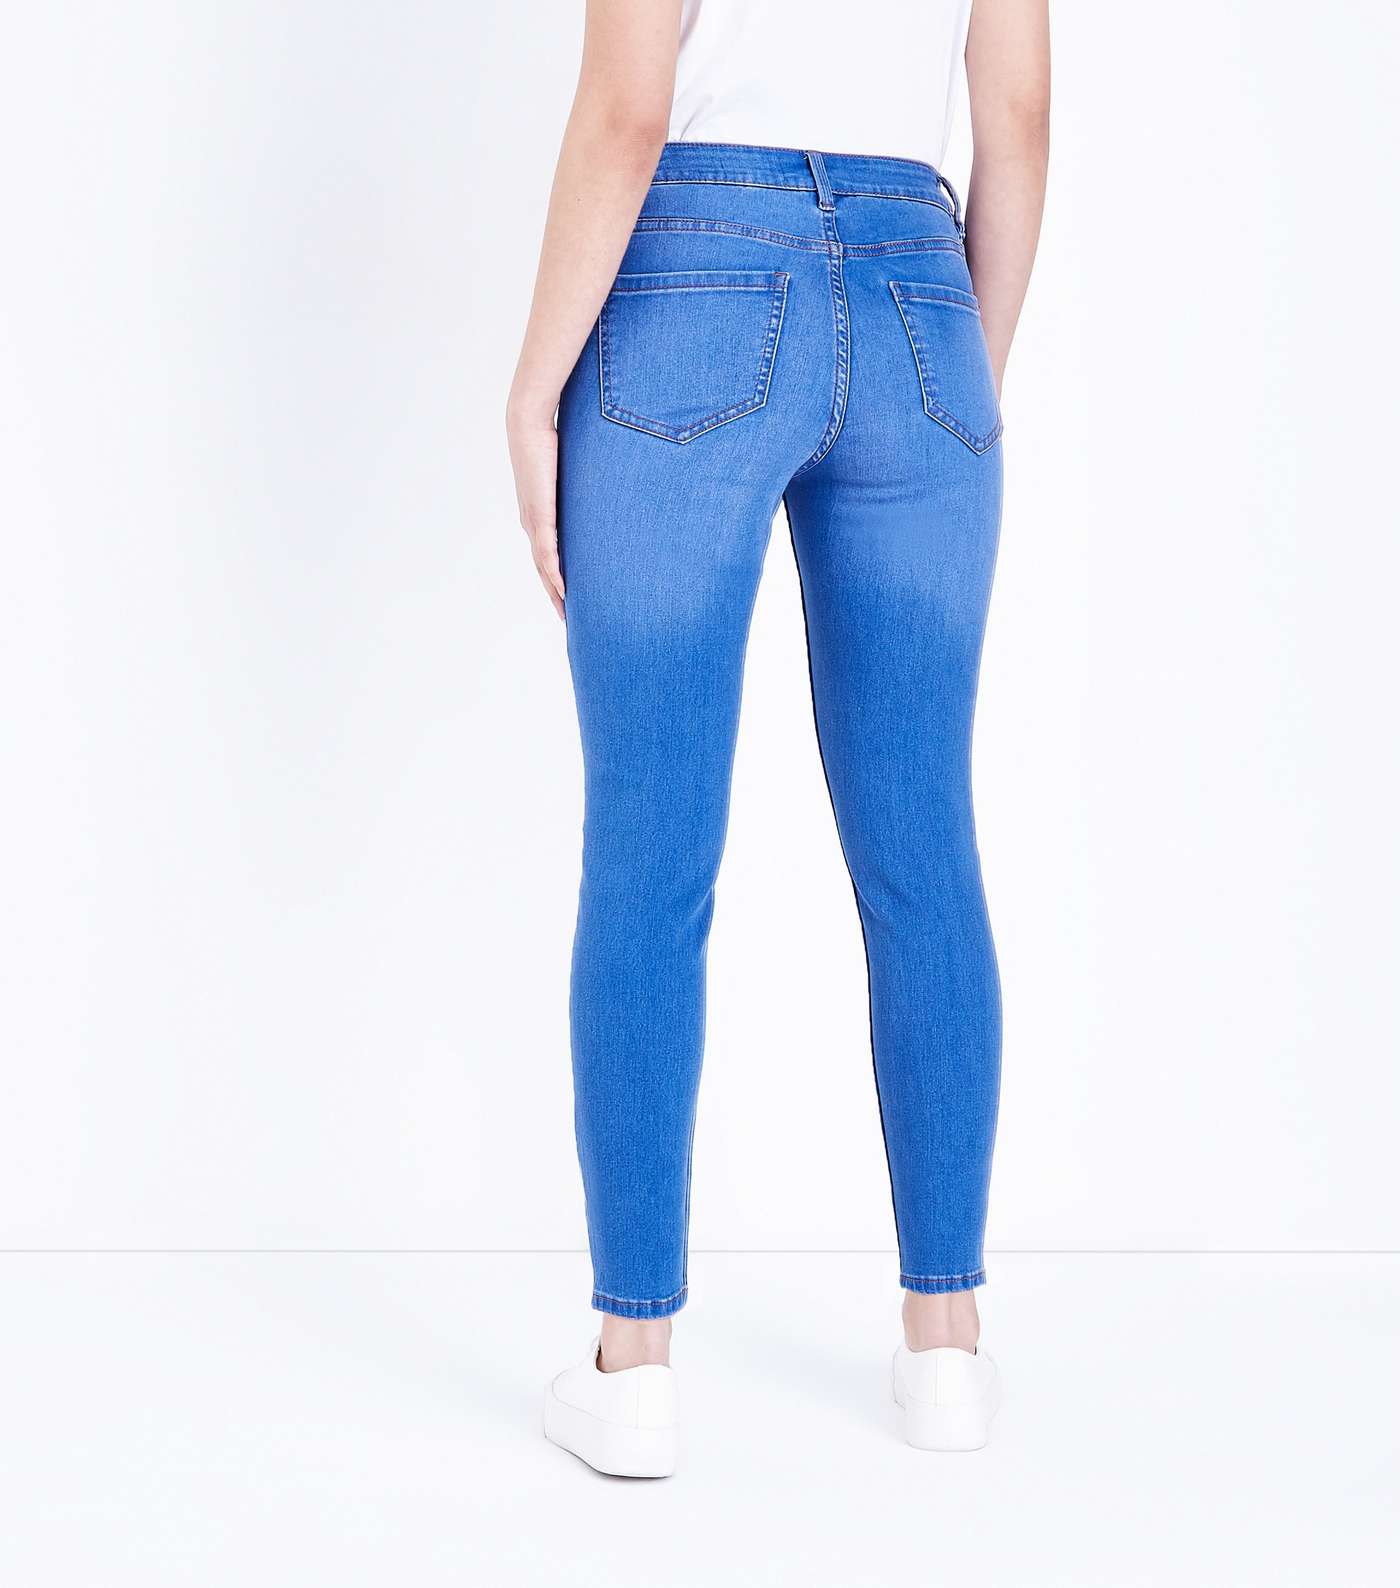 Petite Bright Blue 26in Super Soft Super Skinny Jeans Image 3